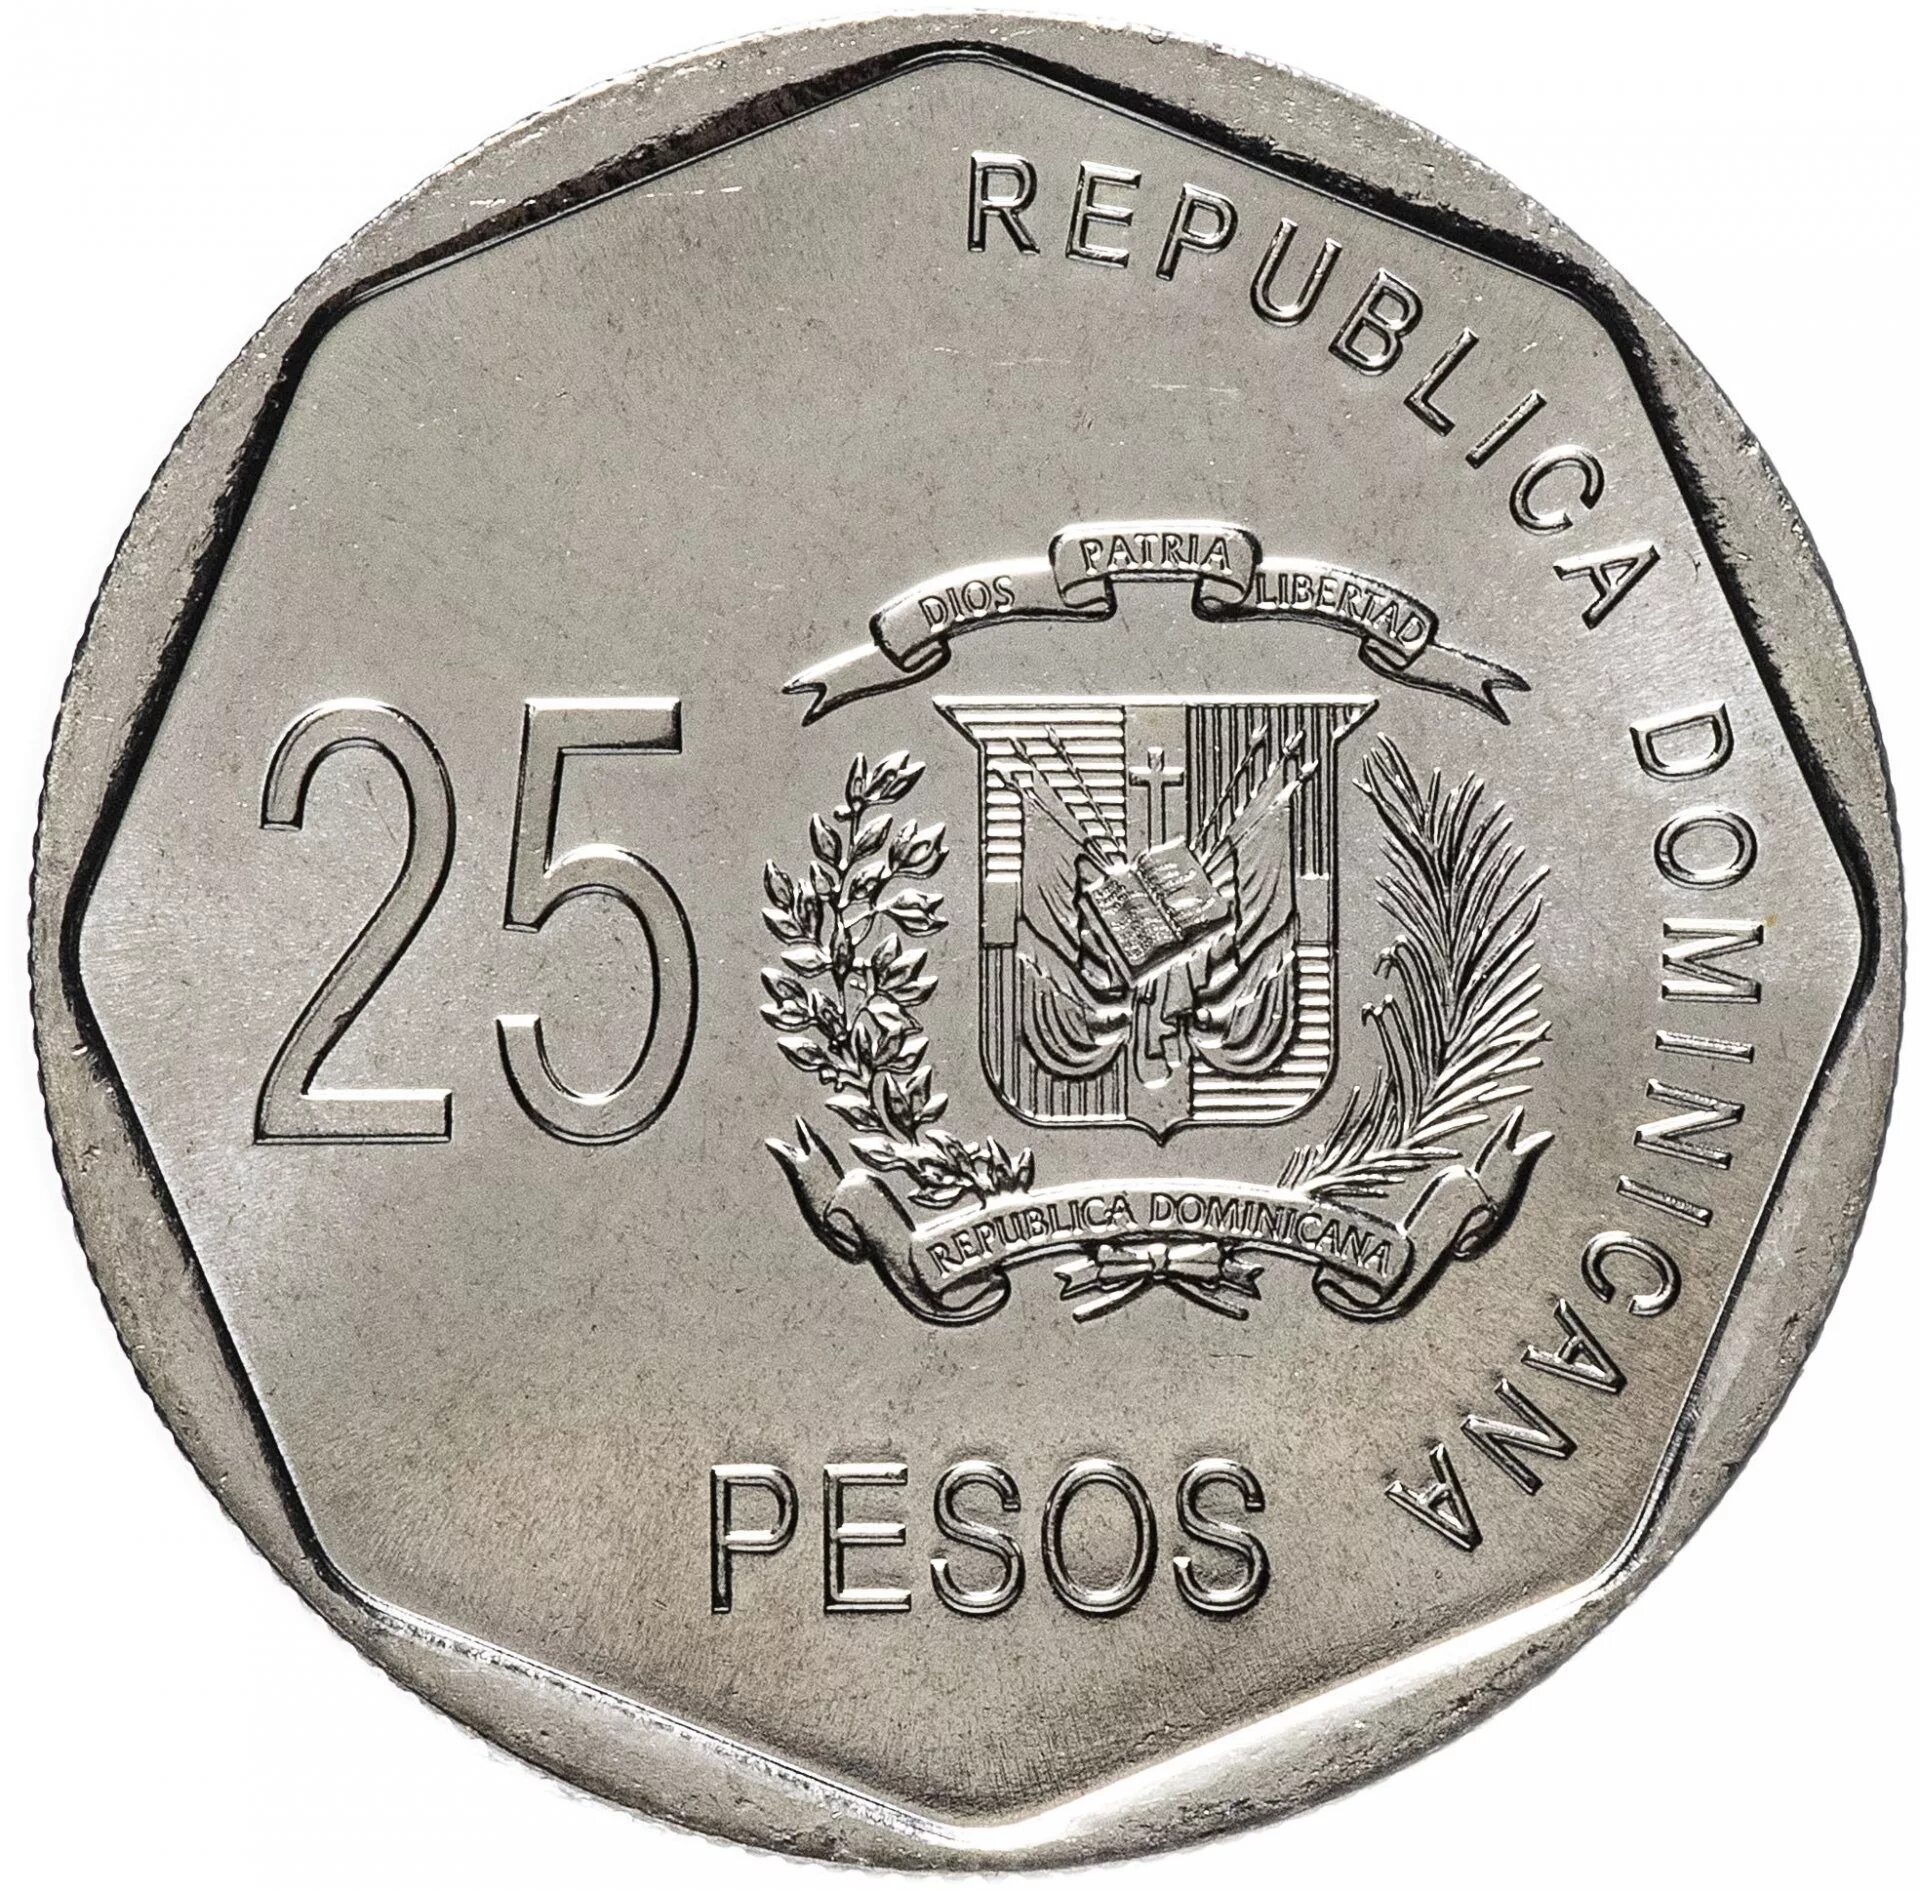 Песо монета. Песо Доминикана. 25 Pesos Республика Доминикана. 10 Песос 2005 Республика Доминикана. Валюта доминиканской республики